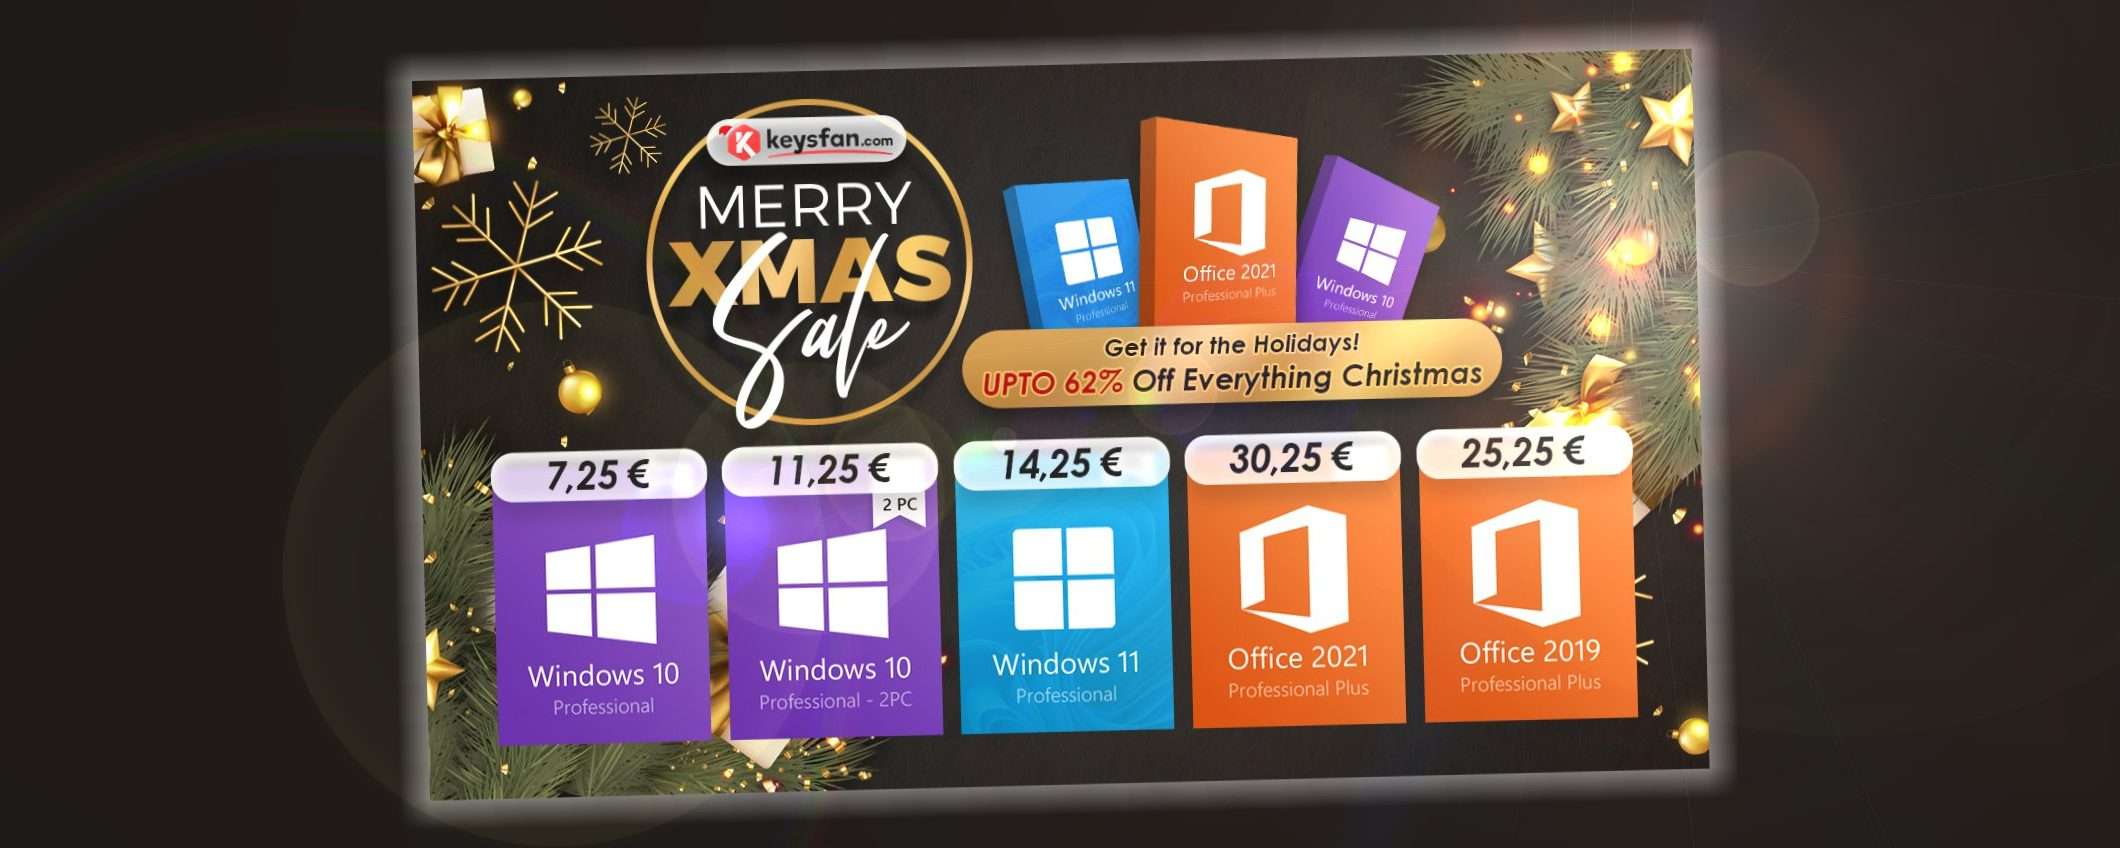 Saldi di Natale: Windows 10 Pro 7,25€ e Office 2021 Pro 15€